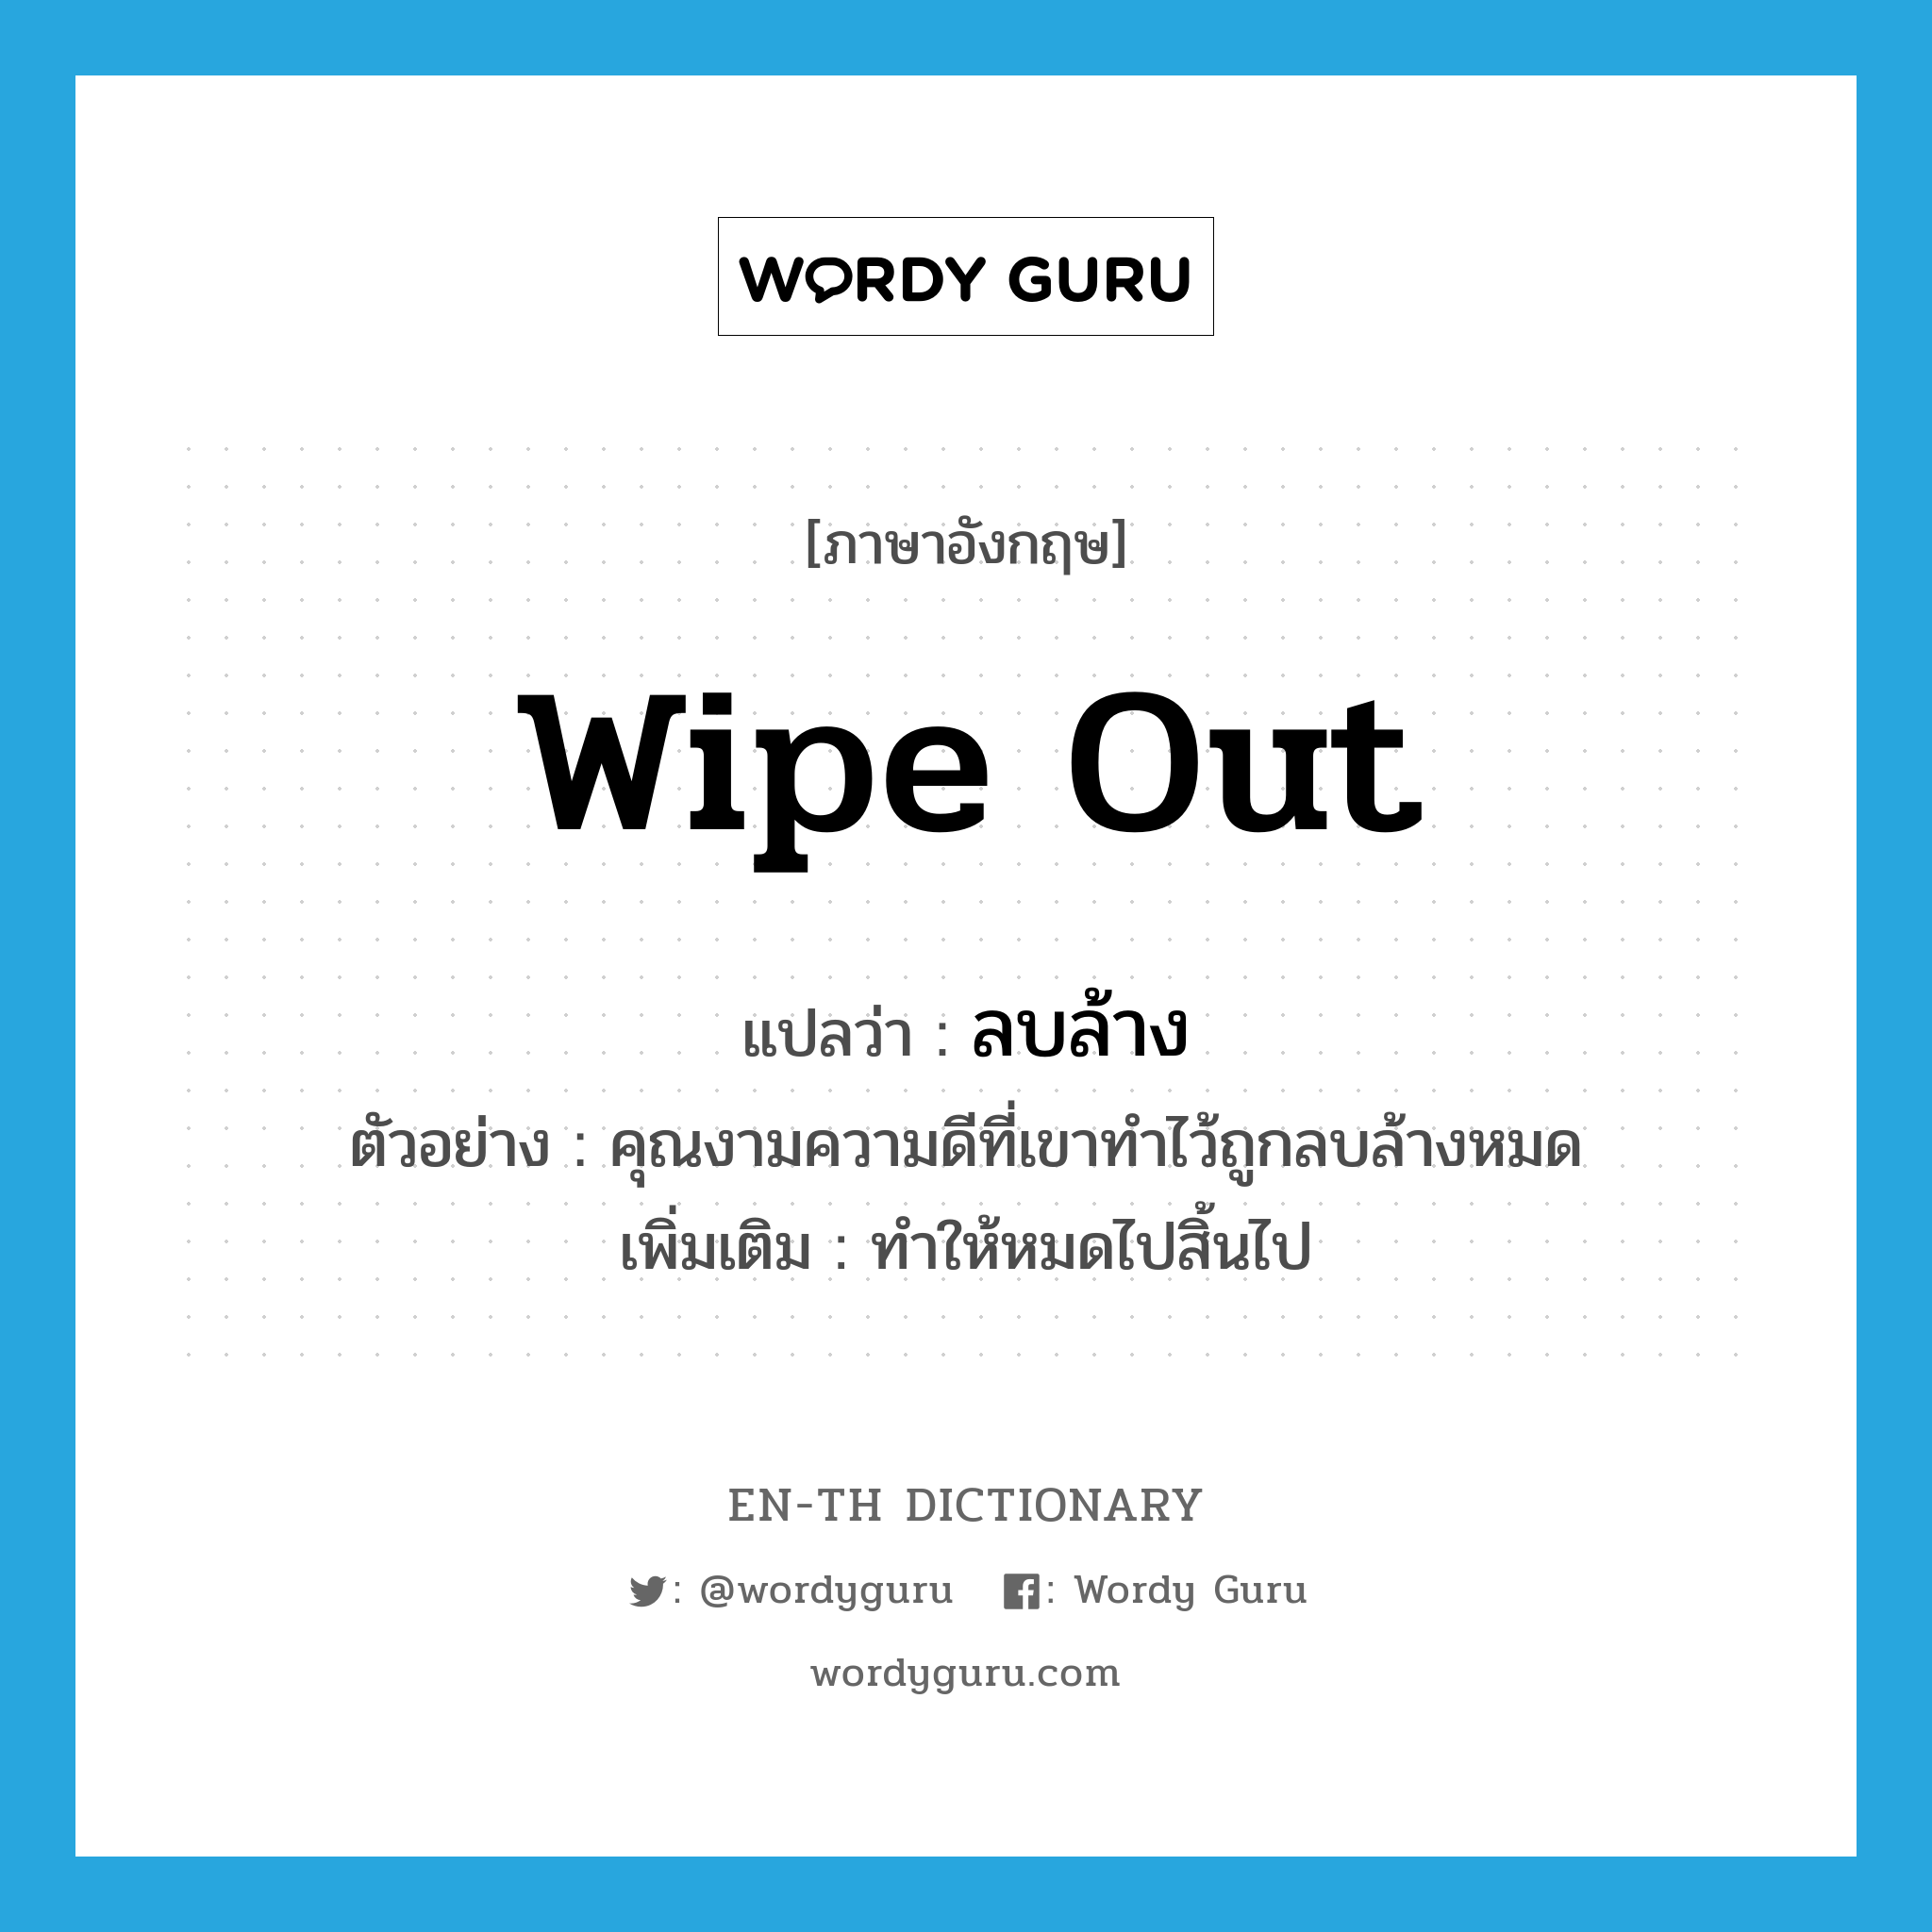 wipe out แปลว่า?, คำศัพท์ภาษาอังกฤษ wipe out แปลว่า ลบล้าง ประเภท V ตัวอย่าง คุณงามความดีที่เขาทำไว้ถูกลบล้างหมด เพิ่มเติม ทำให้หมดไปสิ้นไป หมวด V